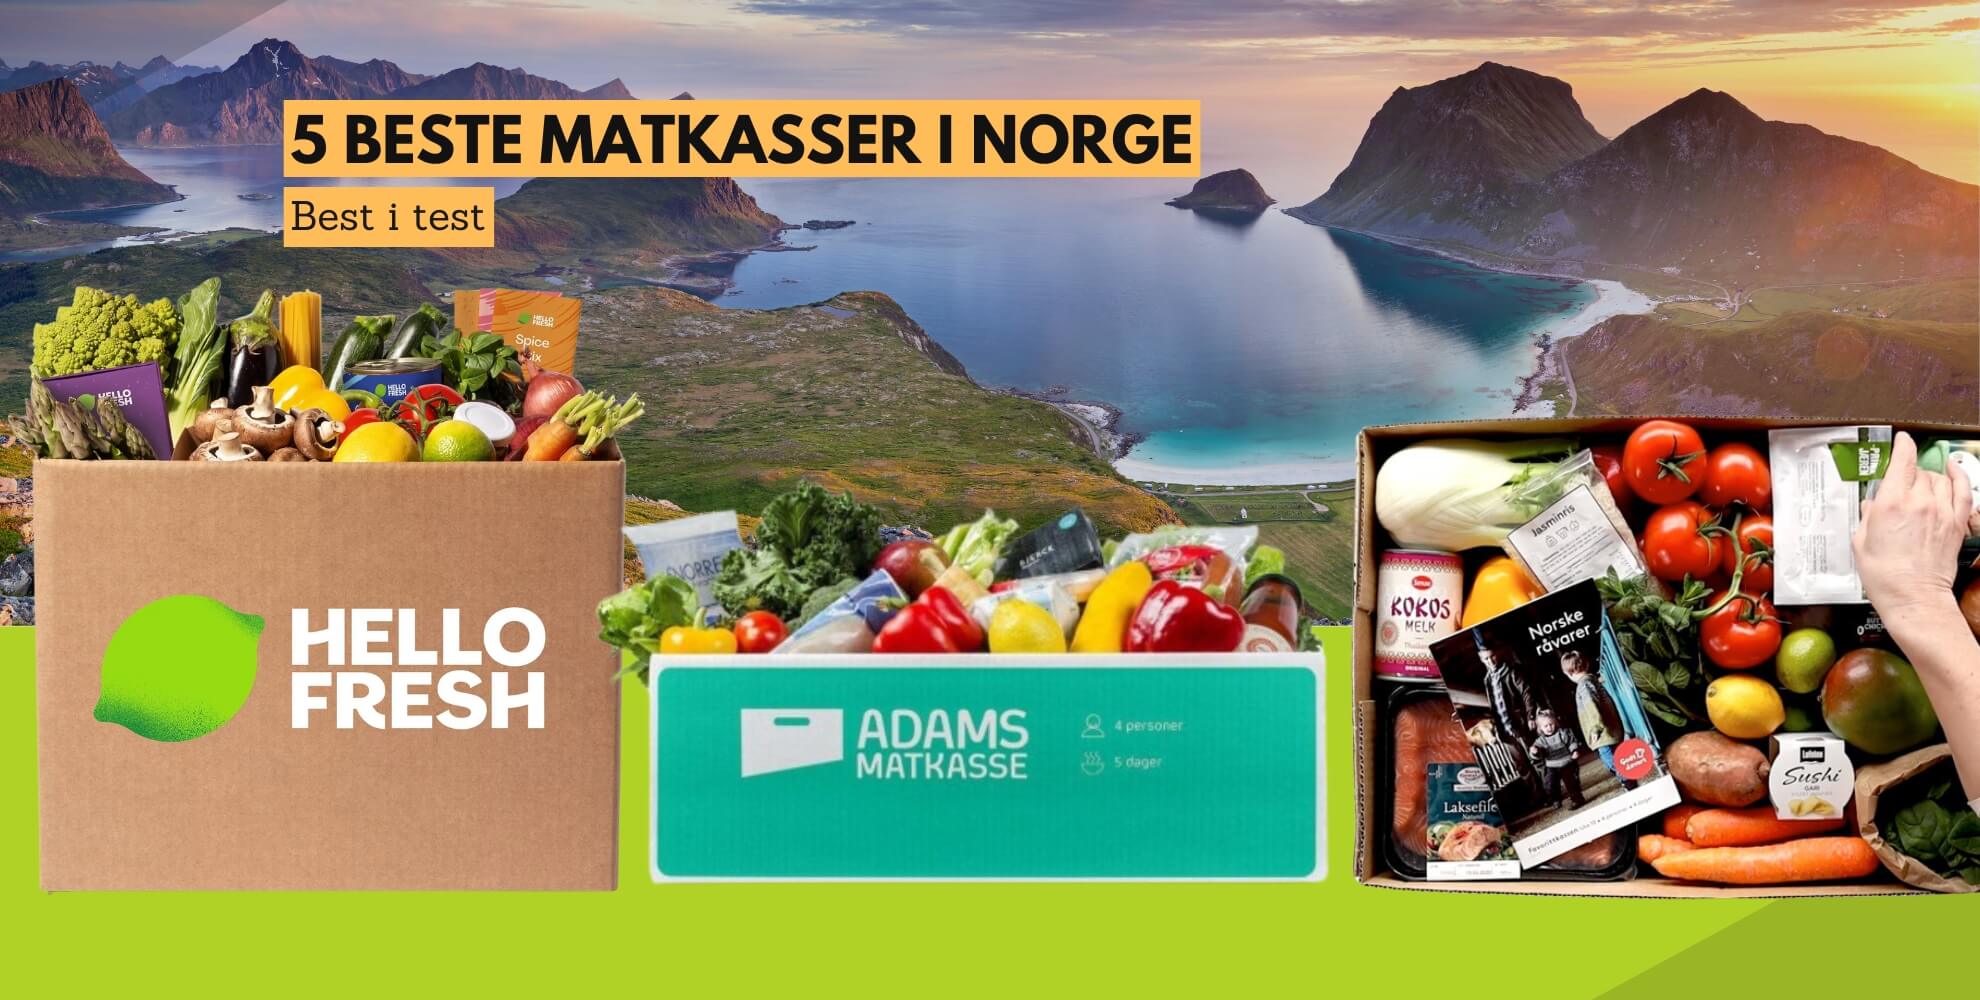 Bilde av matkasse fra hellofresh, adams matkasse og godtlevert, med tekst: 5 beste matkasser i norge, best i test